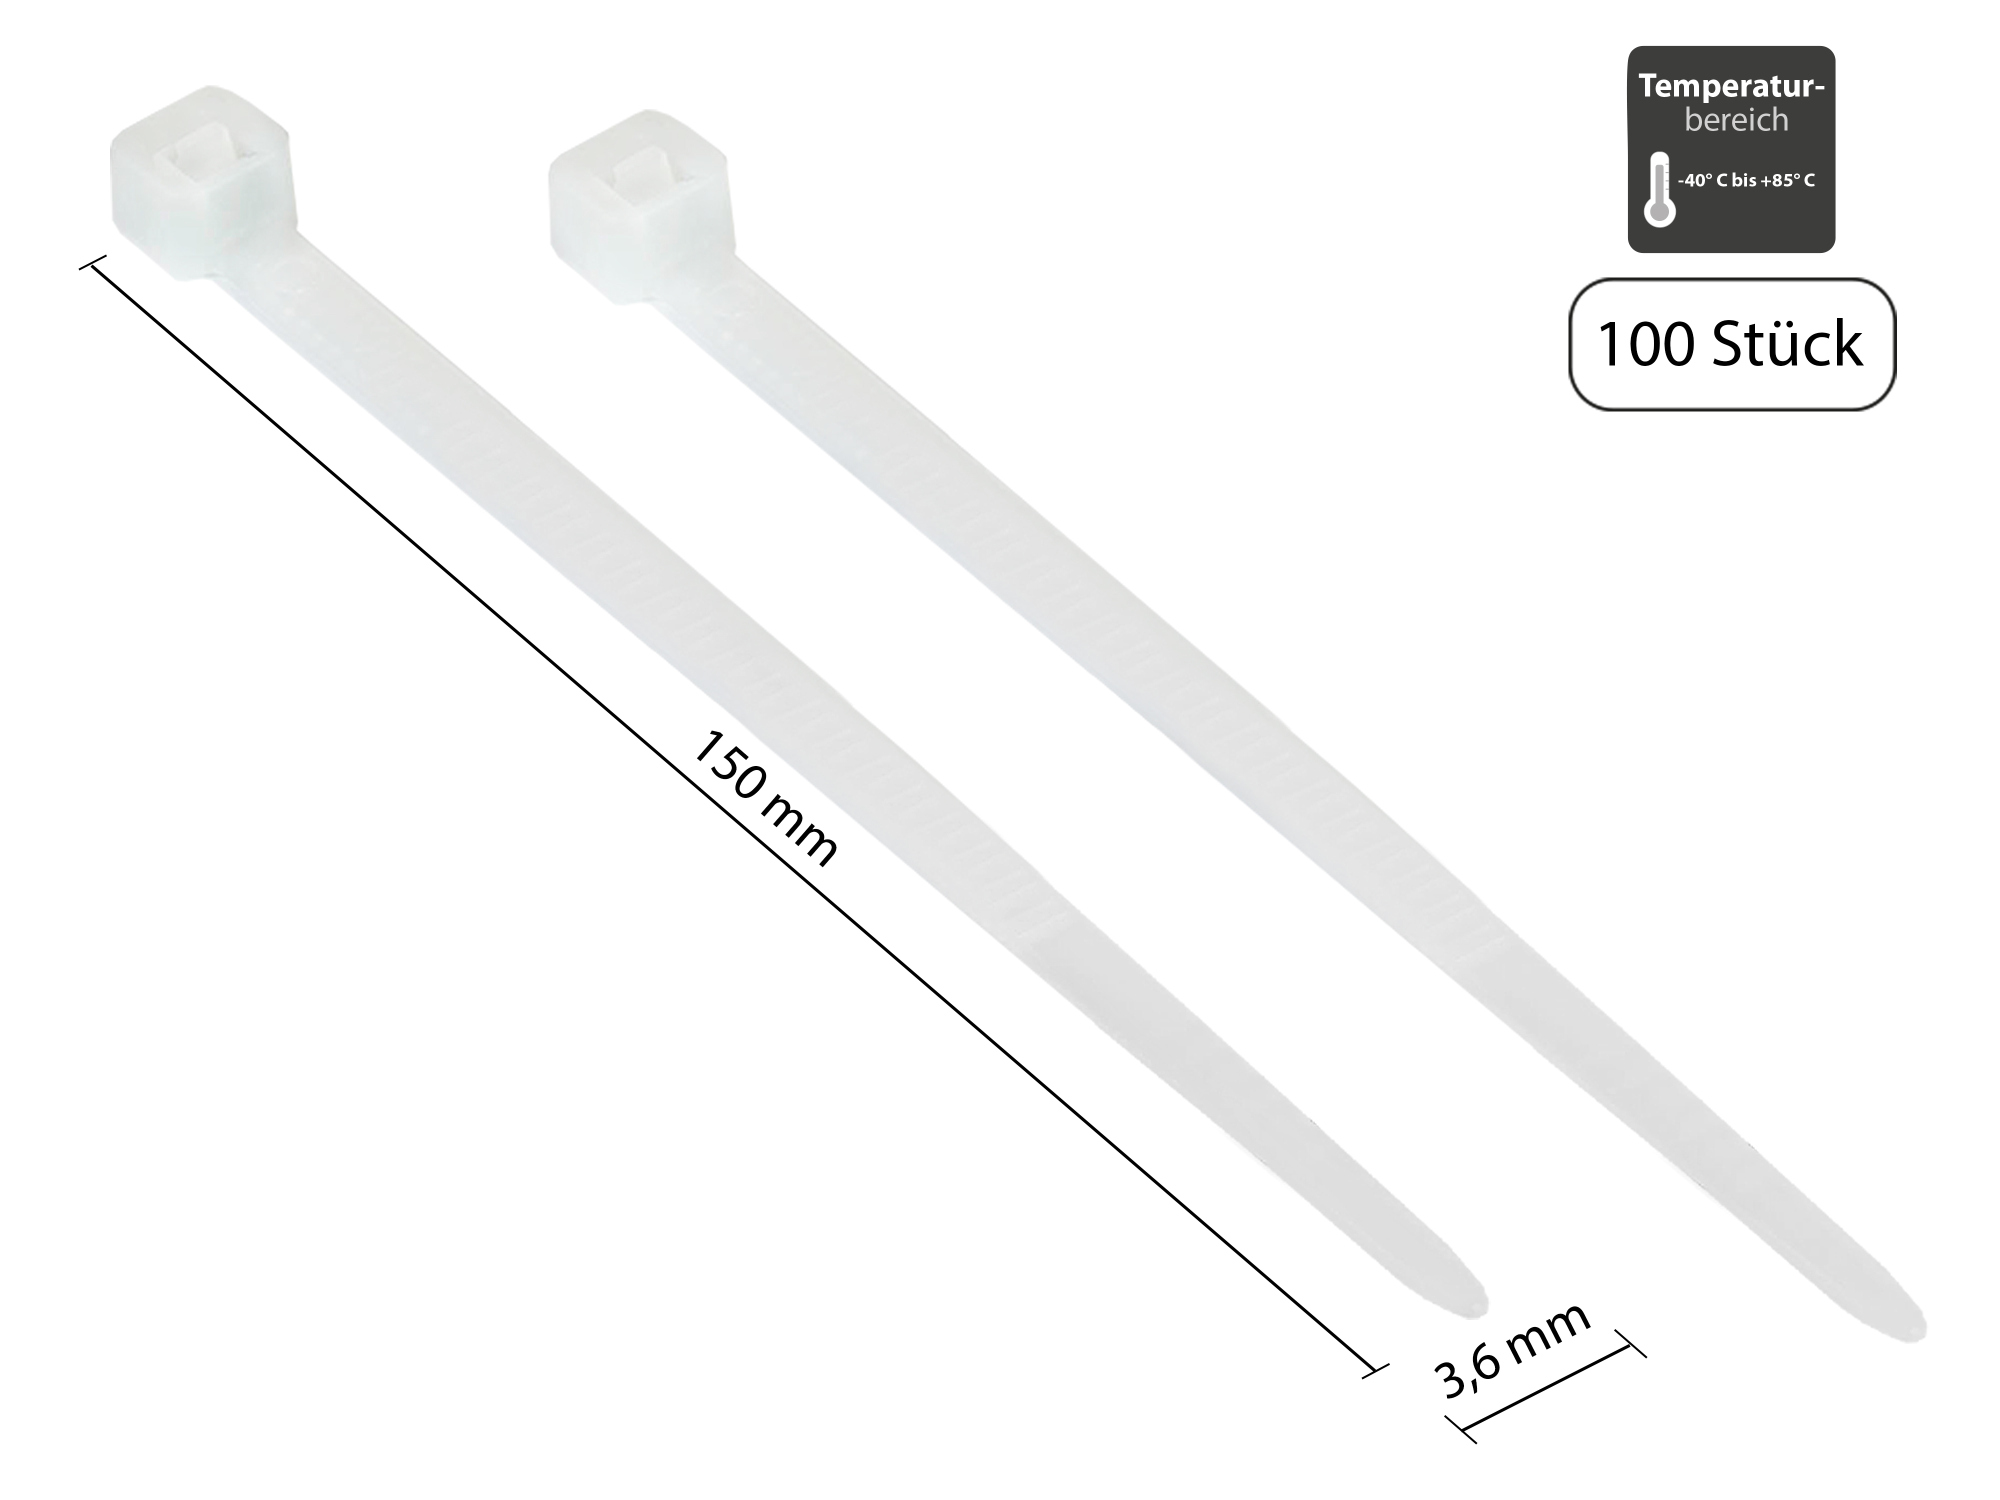 Kabelbinder 150 mm x 3,6 mm, transparent, UL, -40 °C bis +85 °C, 100 Stück